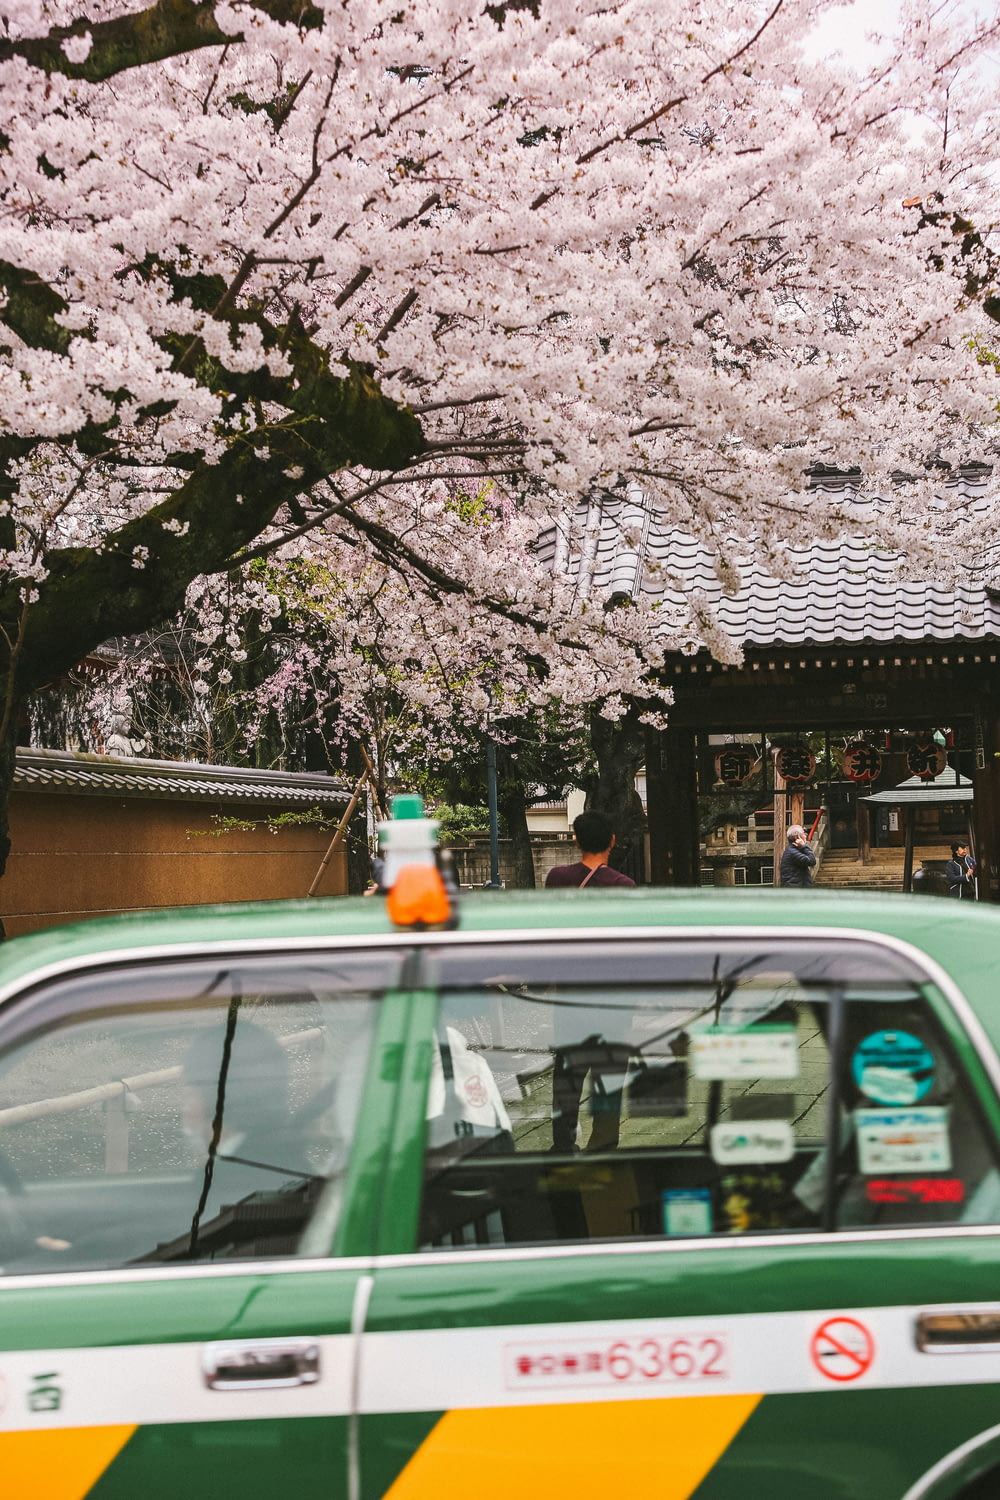 un taxi verde che passa davanti a un albero di ciliegio in fiore